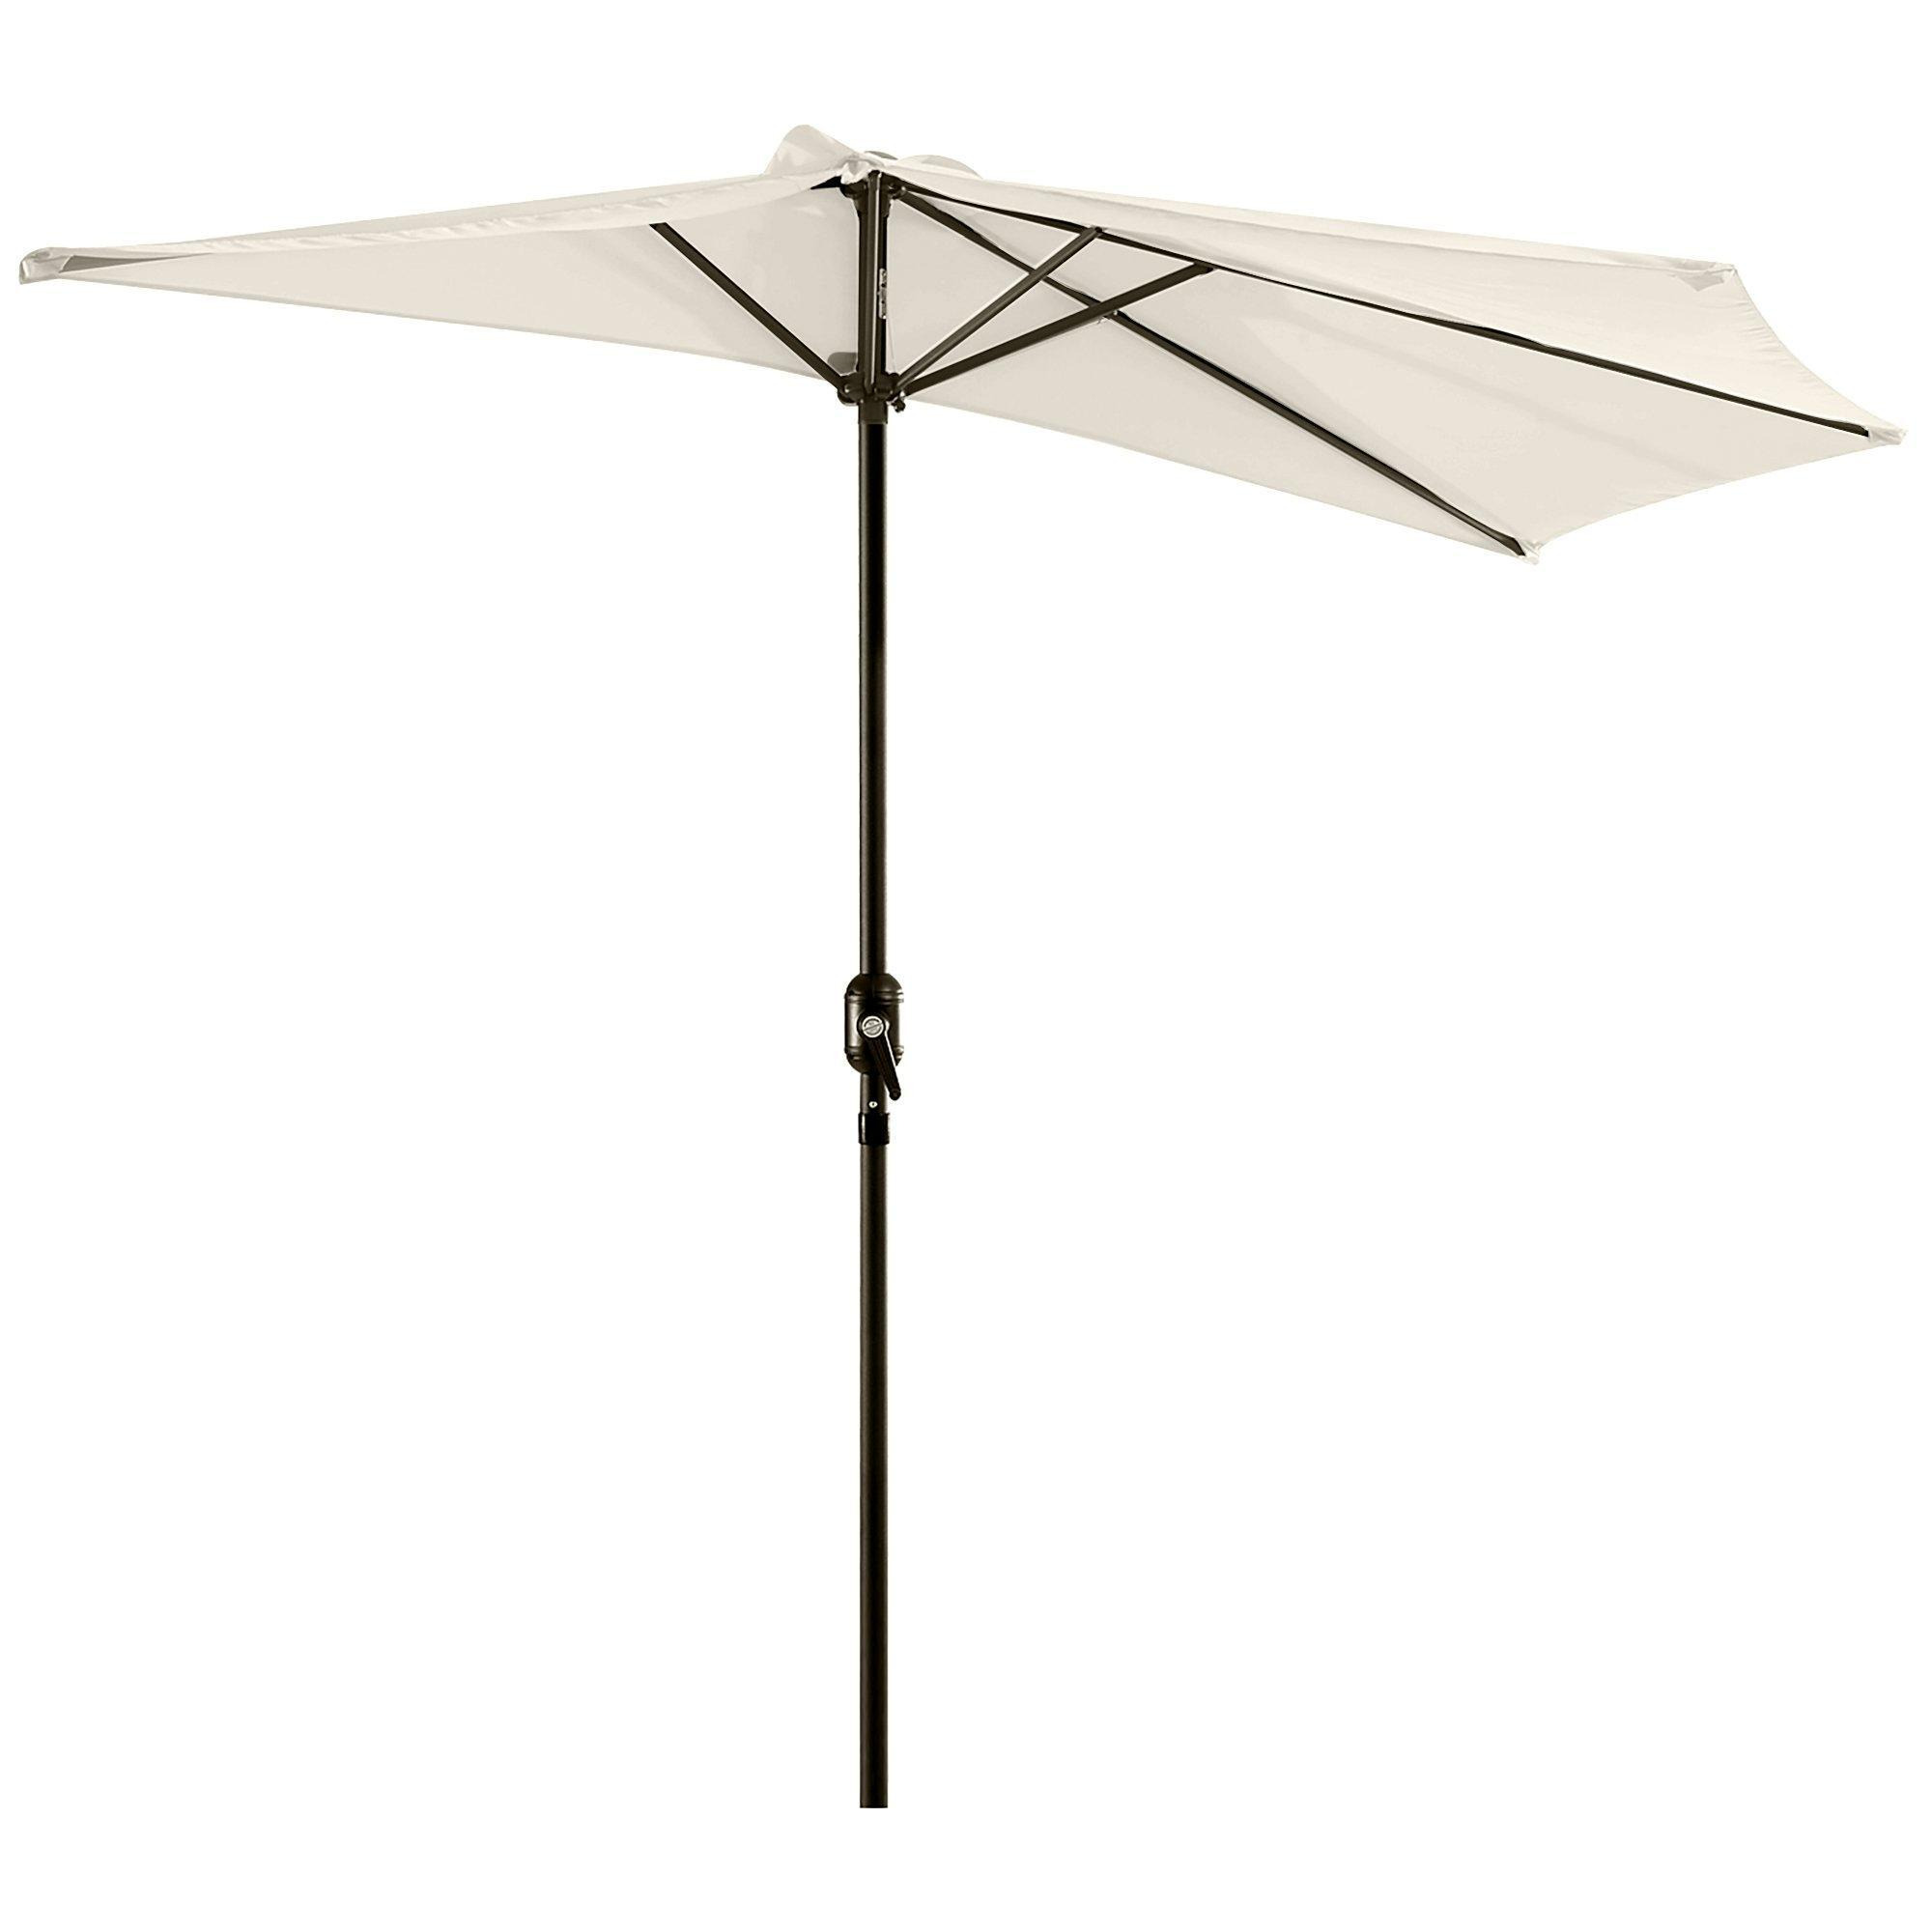 2.3m Half Round Parasol Umbrella Balcony Metal Frame Outdoor w/ Crank NO BASE - image 1